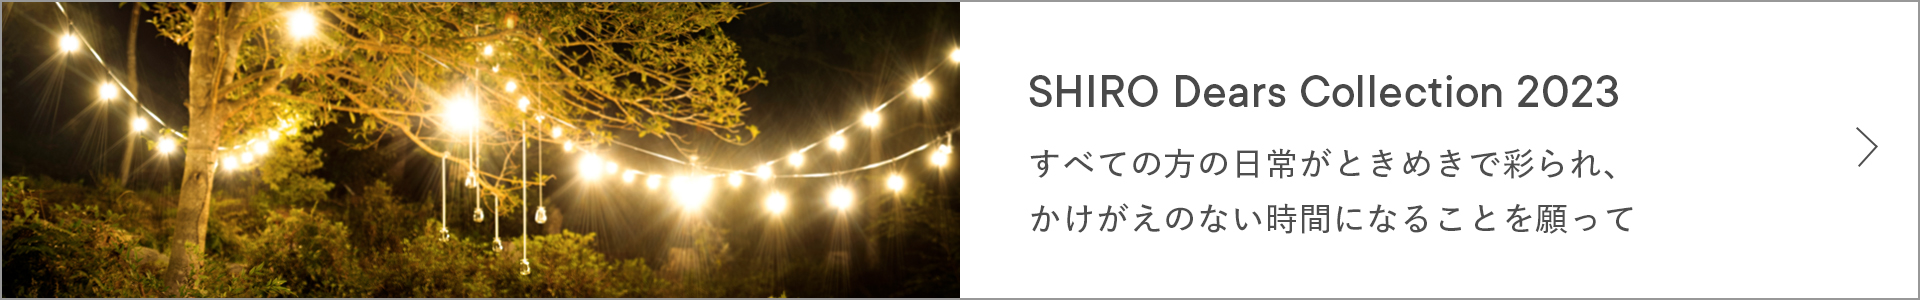 SHIRO Dears Collection 2023